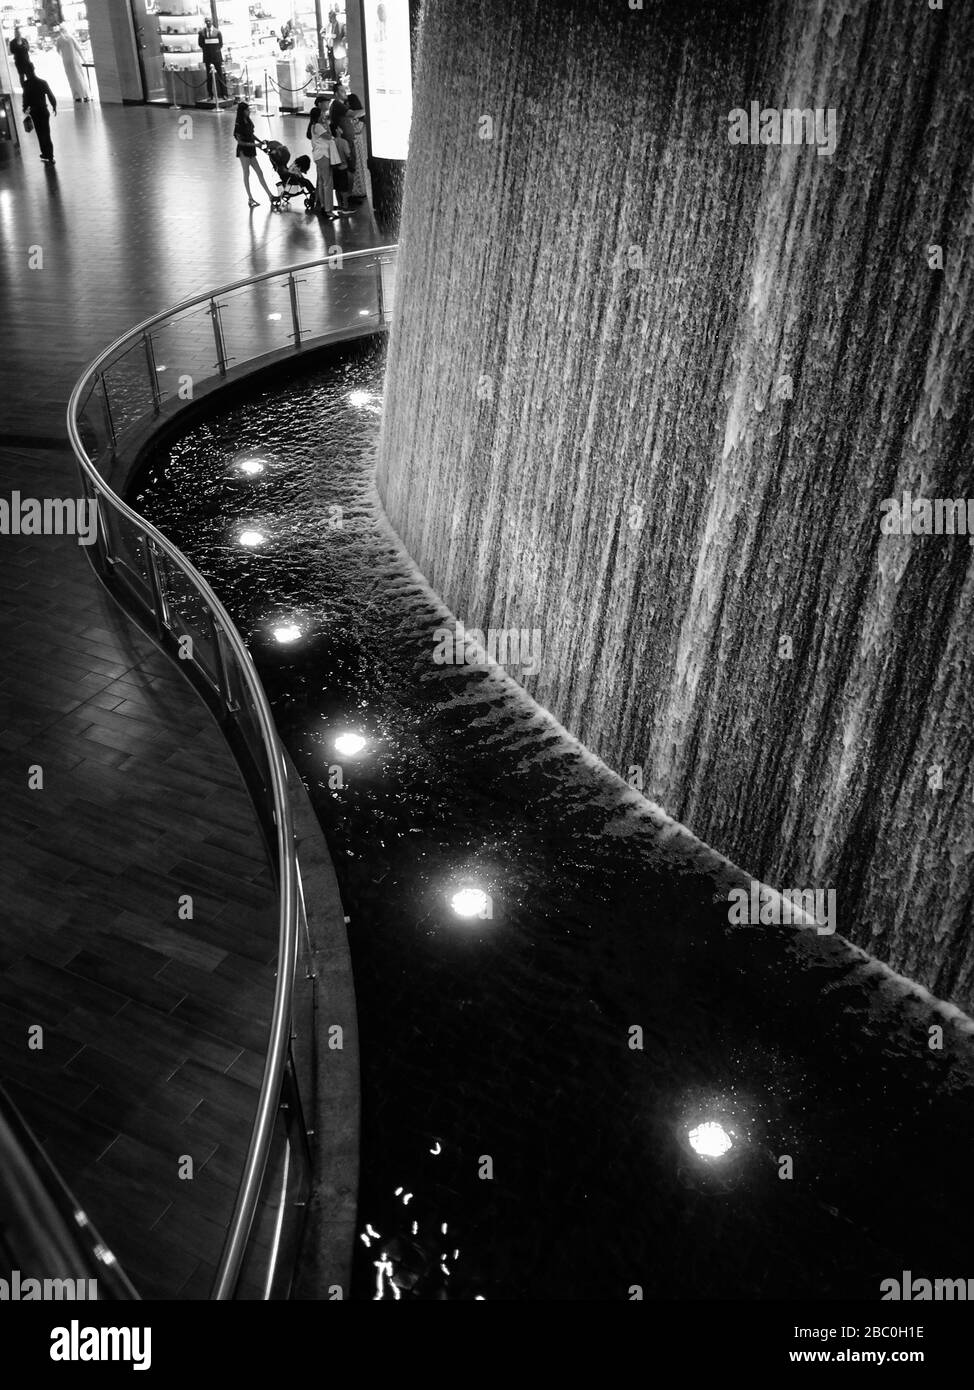 La cascata Pearl Divers all'interno del gigantesco Dubai Mall nel centro di Dubai, negli Emirati Arabi Uniti. Foto Stock